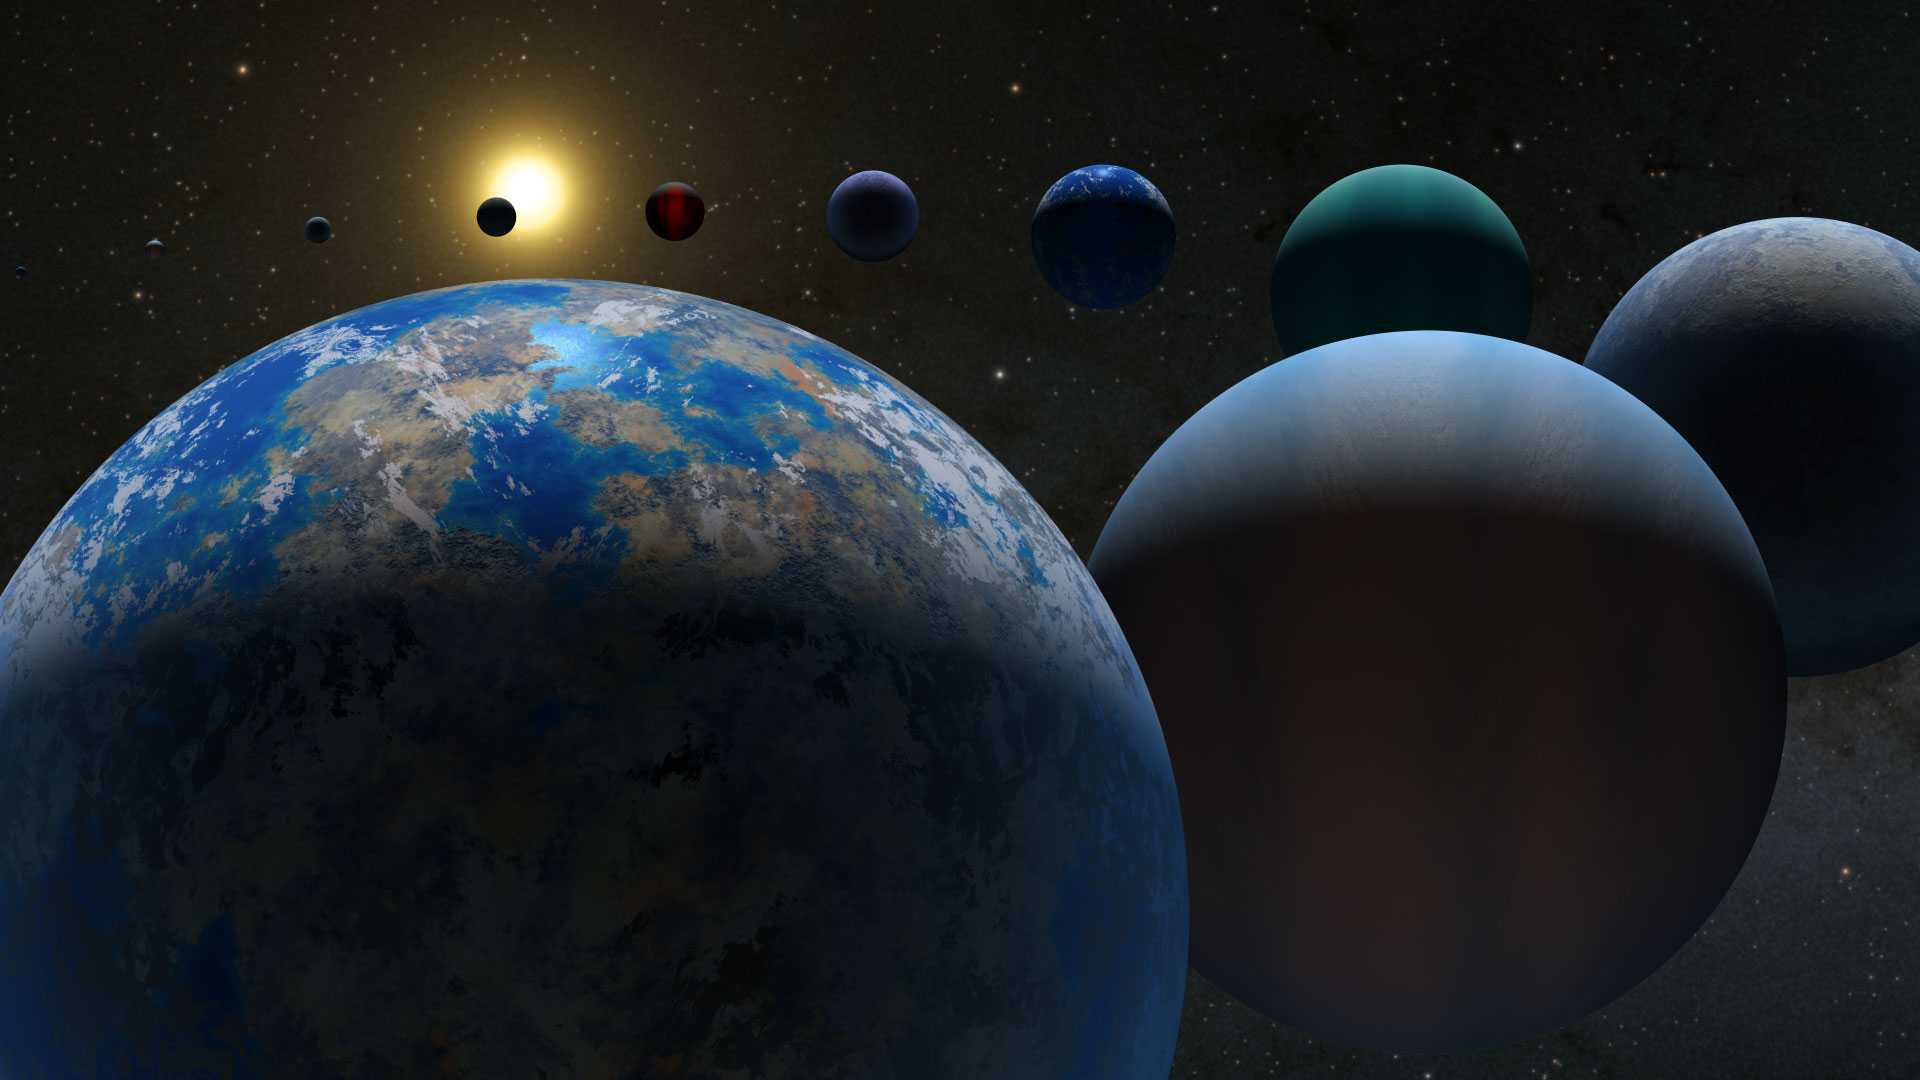 Titik Awal Penemuan Exoplanet, Tandai Kehidupan Baru di Luar Tata Surya Kita